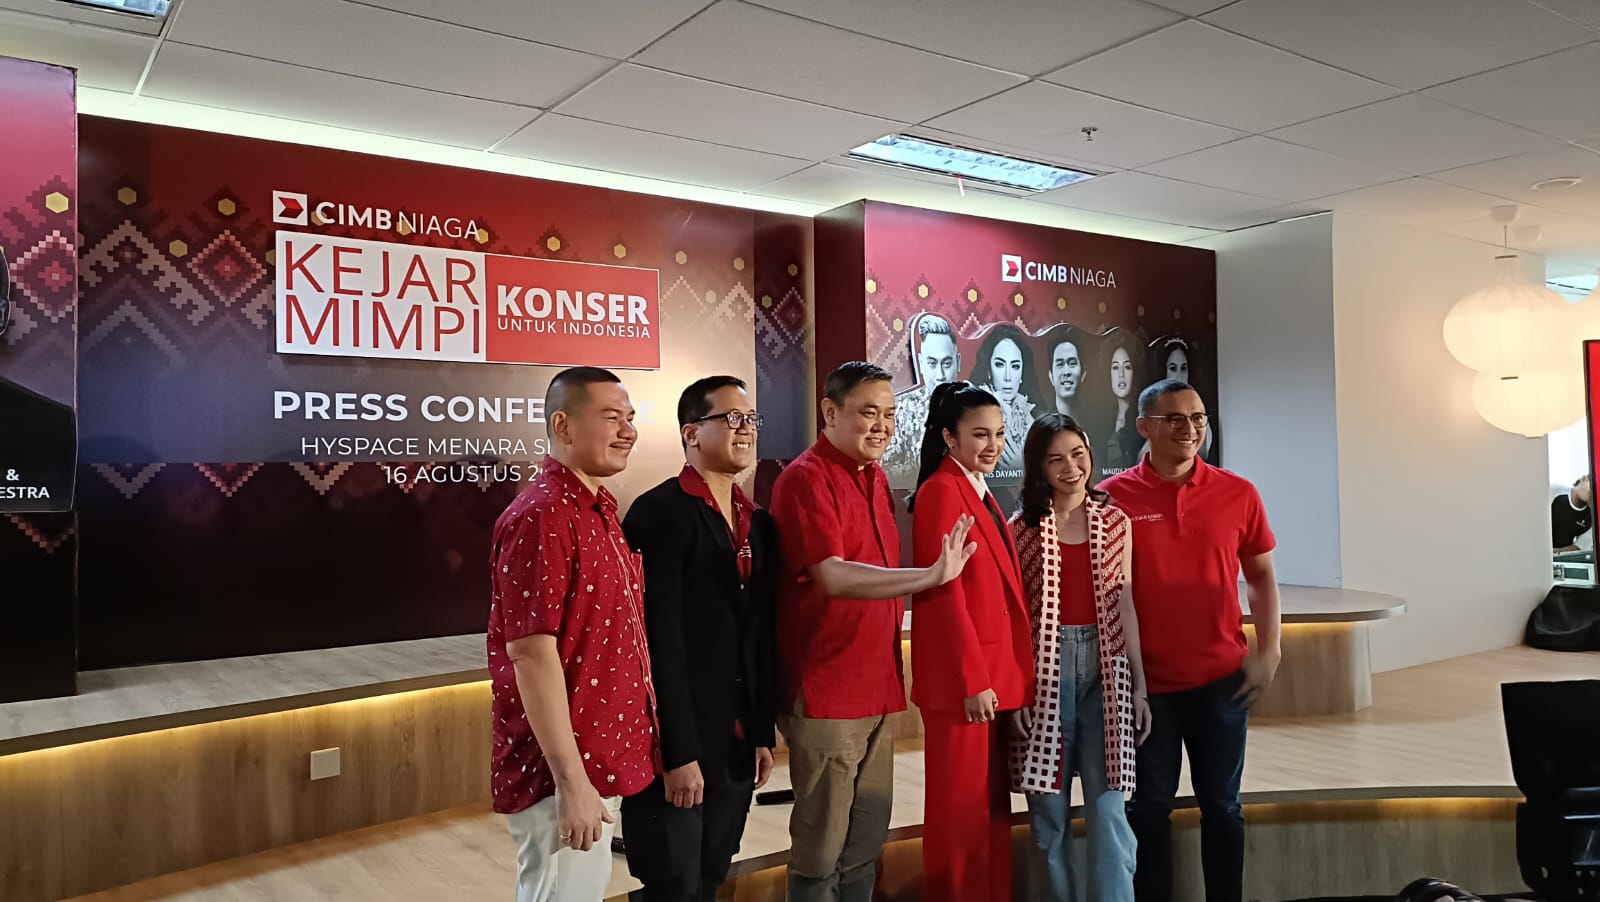 Dukung Industri Kreatif, CIMB Niaga Akan Gelar Konser Kejar Mimpi untuk Indonesia 2023